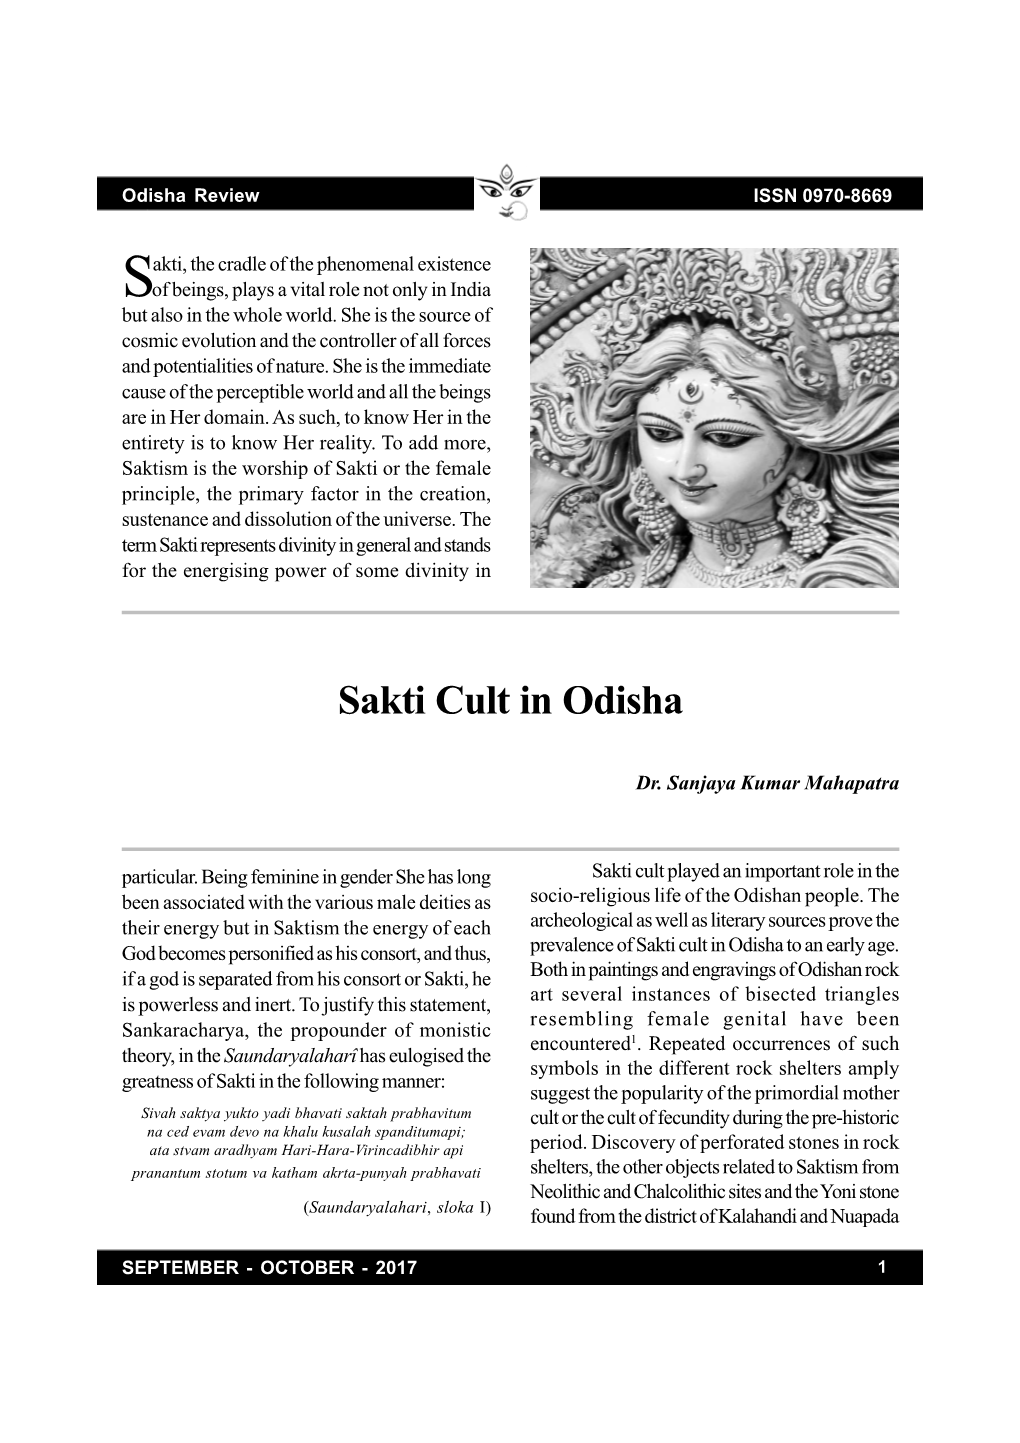 Sakti Cult in Odisha